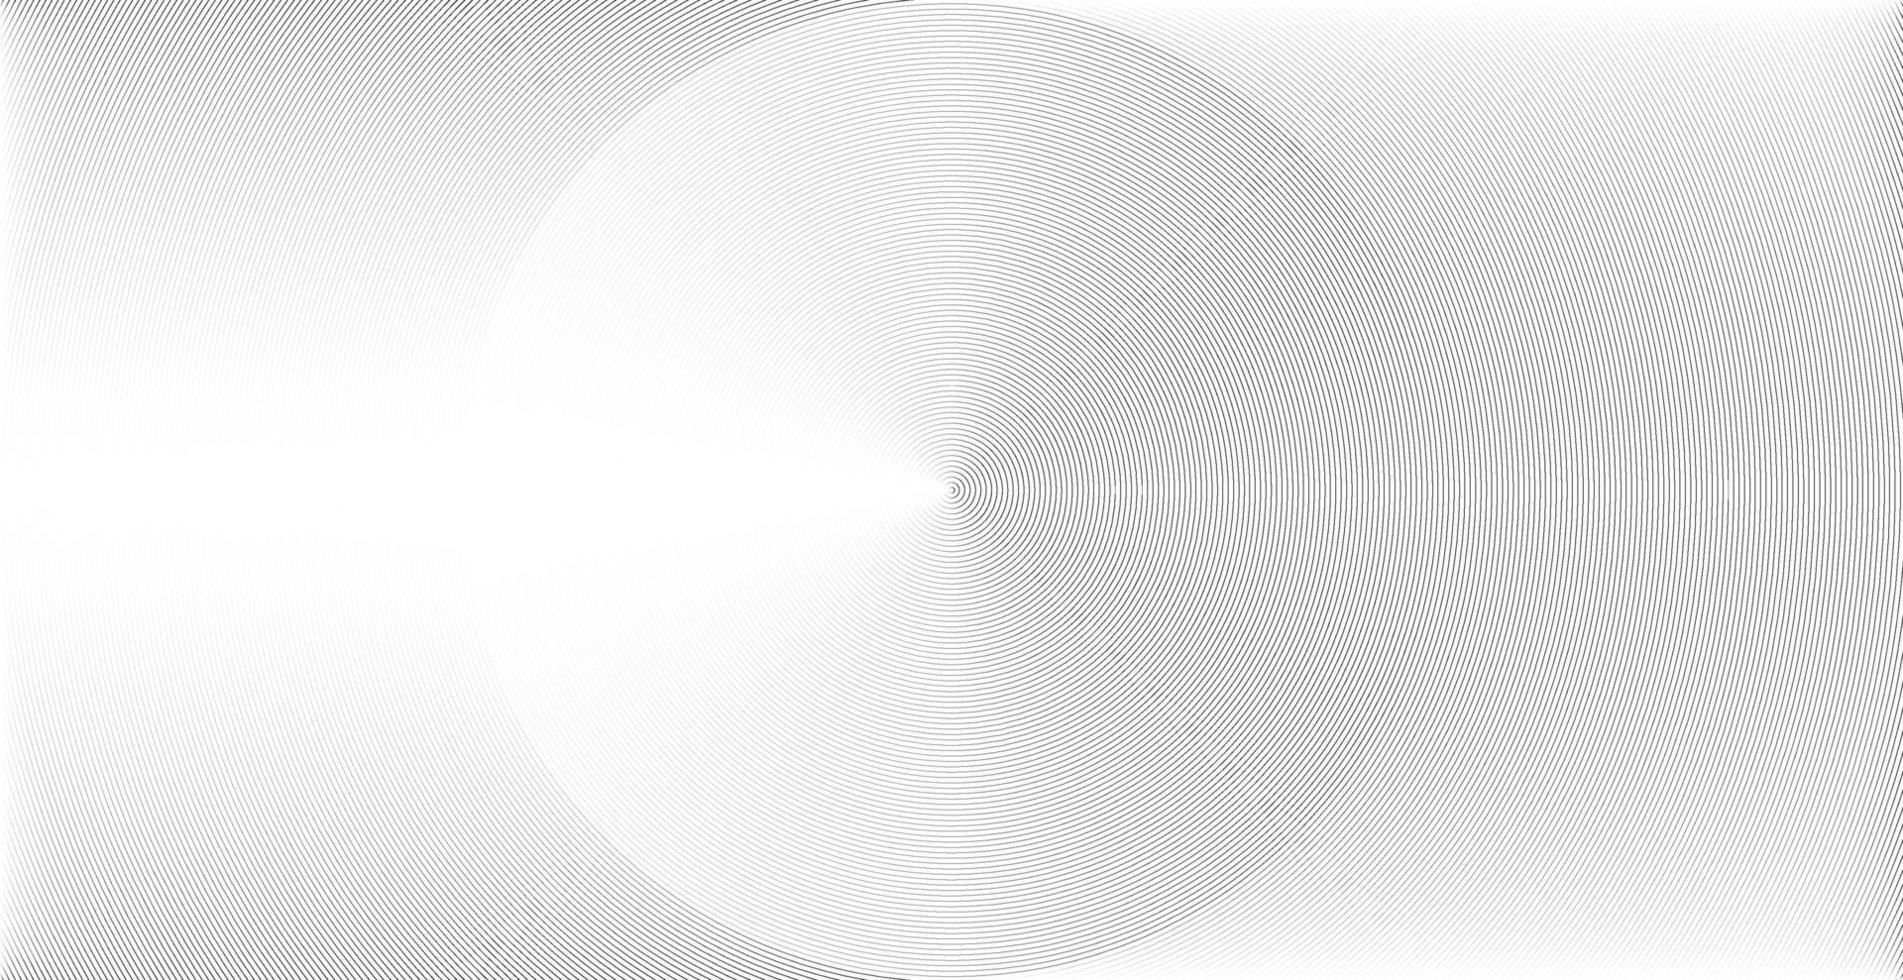 cercle concentrique. illustration pour onde sonore. motif de ligne de cercle abstrait. graphique noir et blanc vecteur